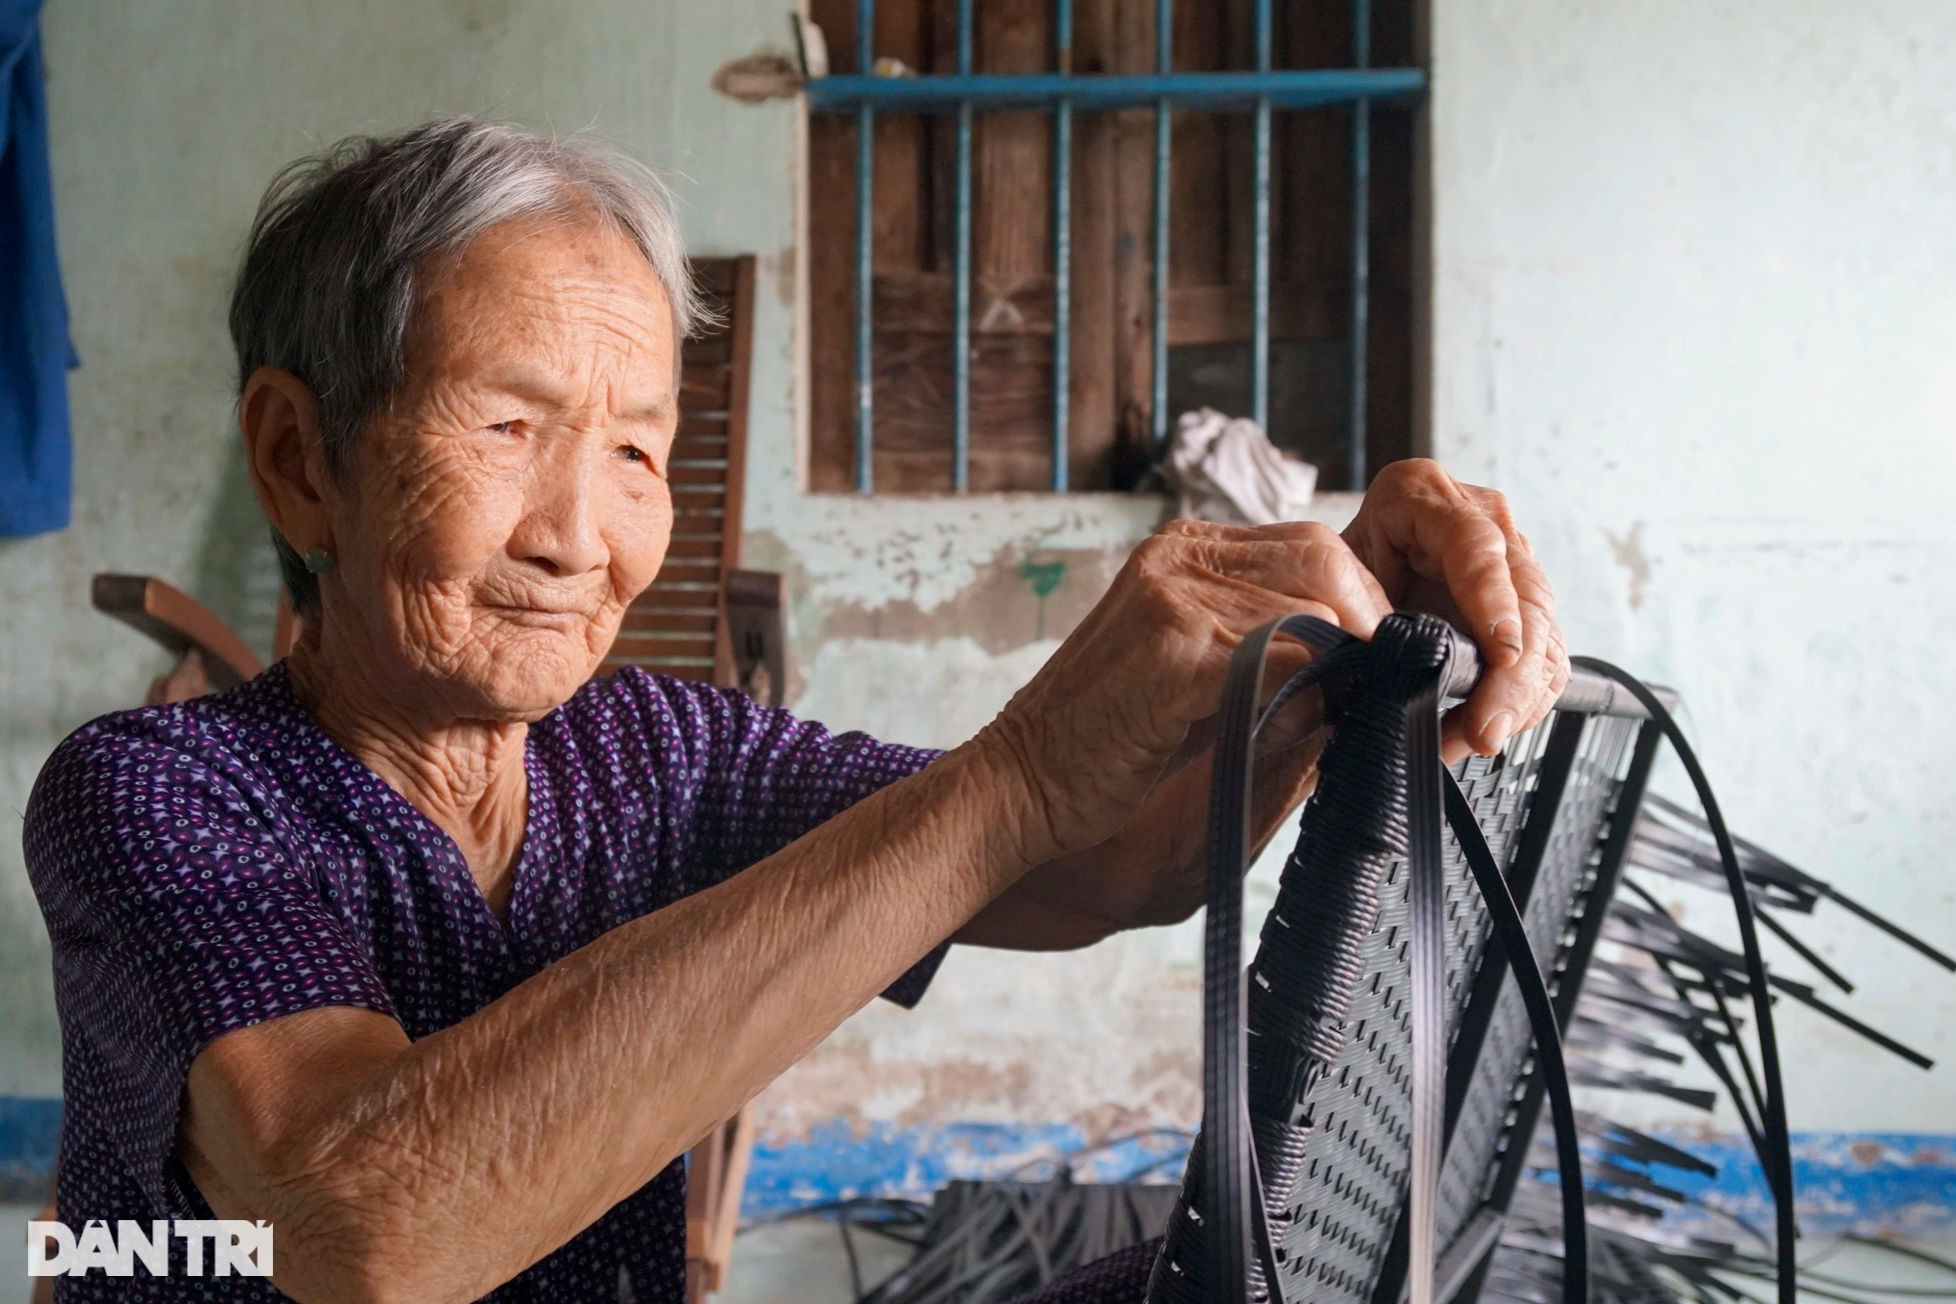 Cụ bà 90 tuổi miệt mài đan đồ nhựa để đỡ phụ thuộc, làm phiền con cháu - 1